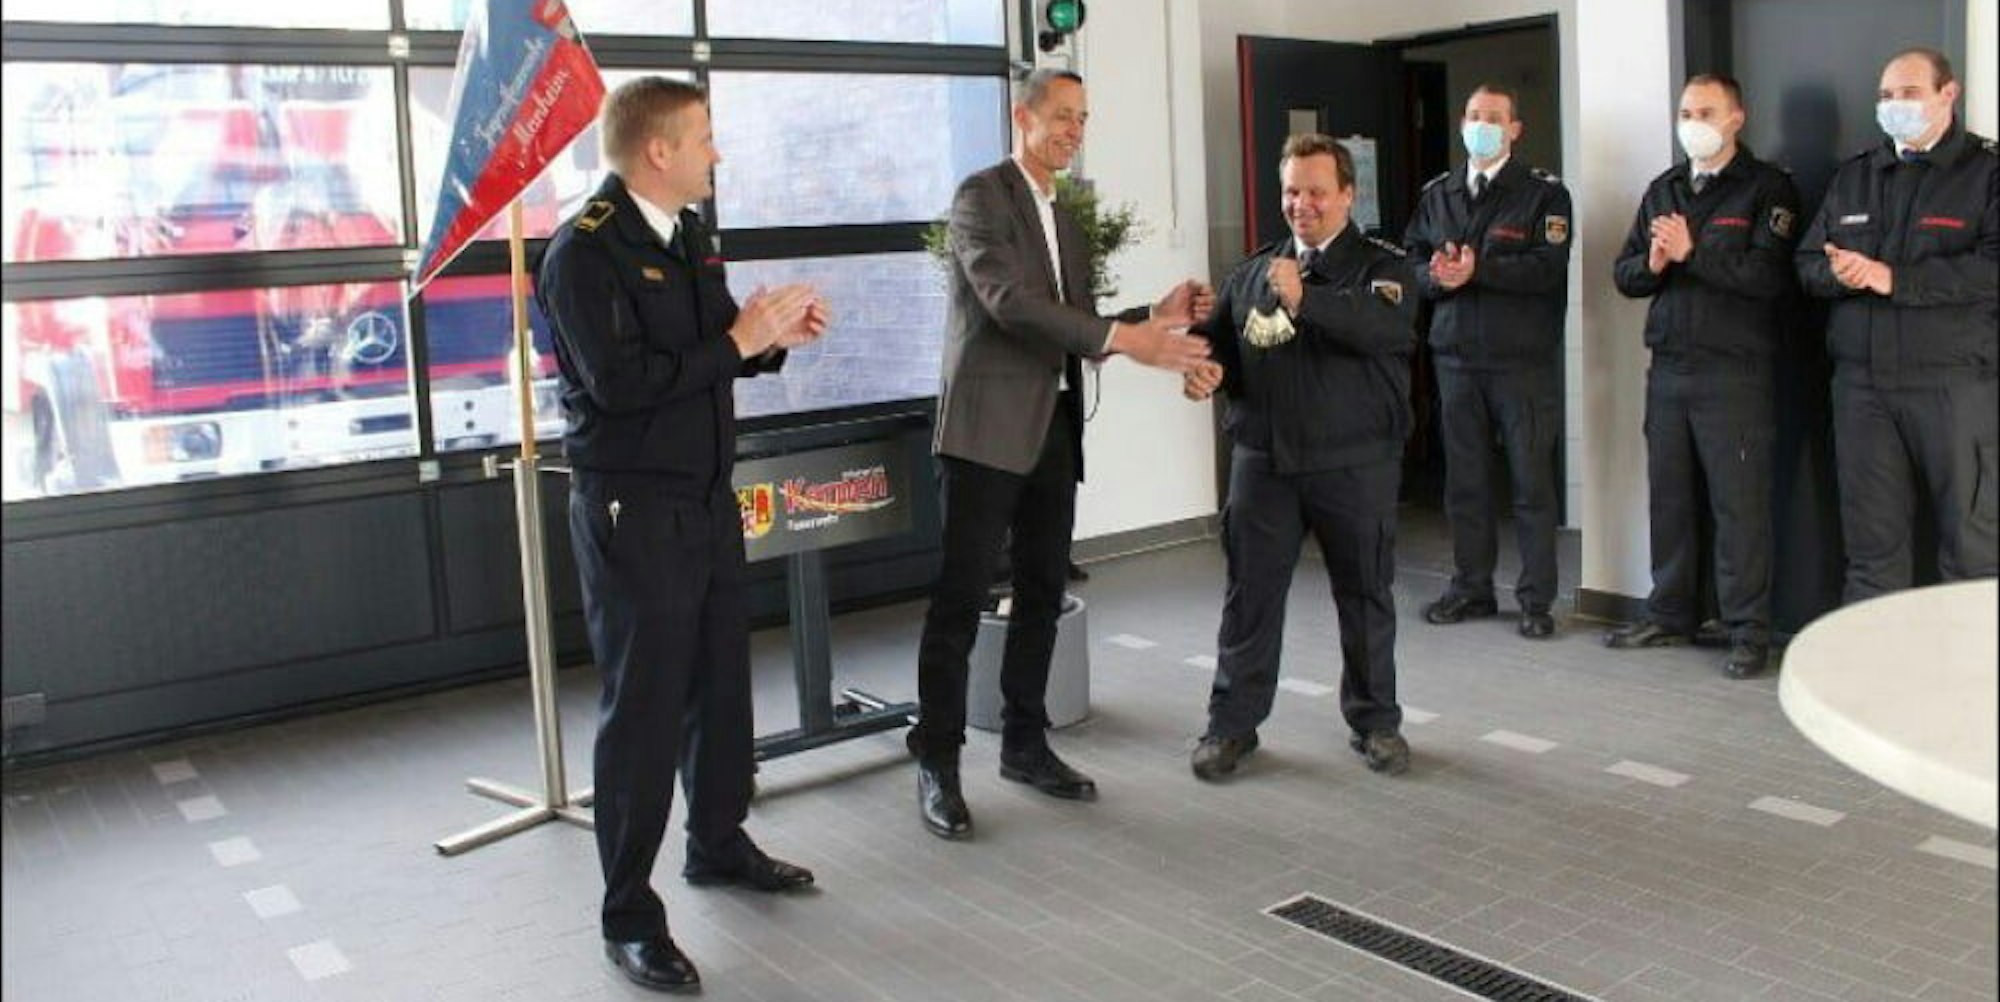 Bürgermeister Dieter Spürck (2.v.l.) überreichte den Manheimer Feuerwehrleuten offiziell die Schlüssel.